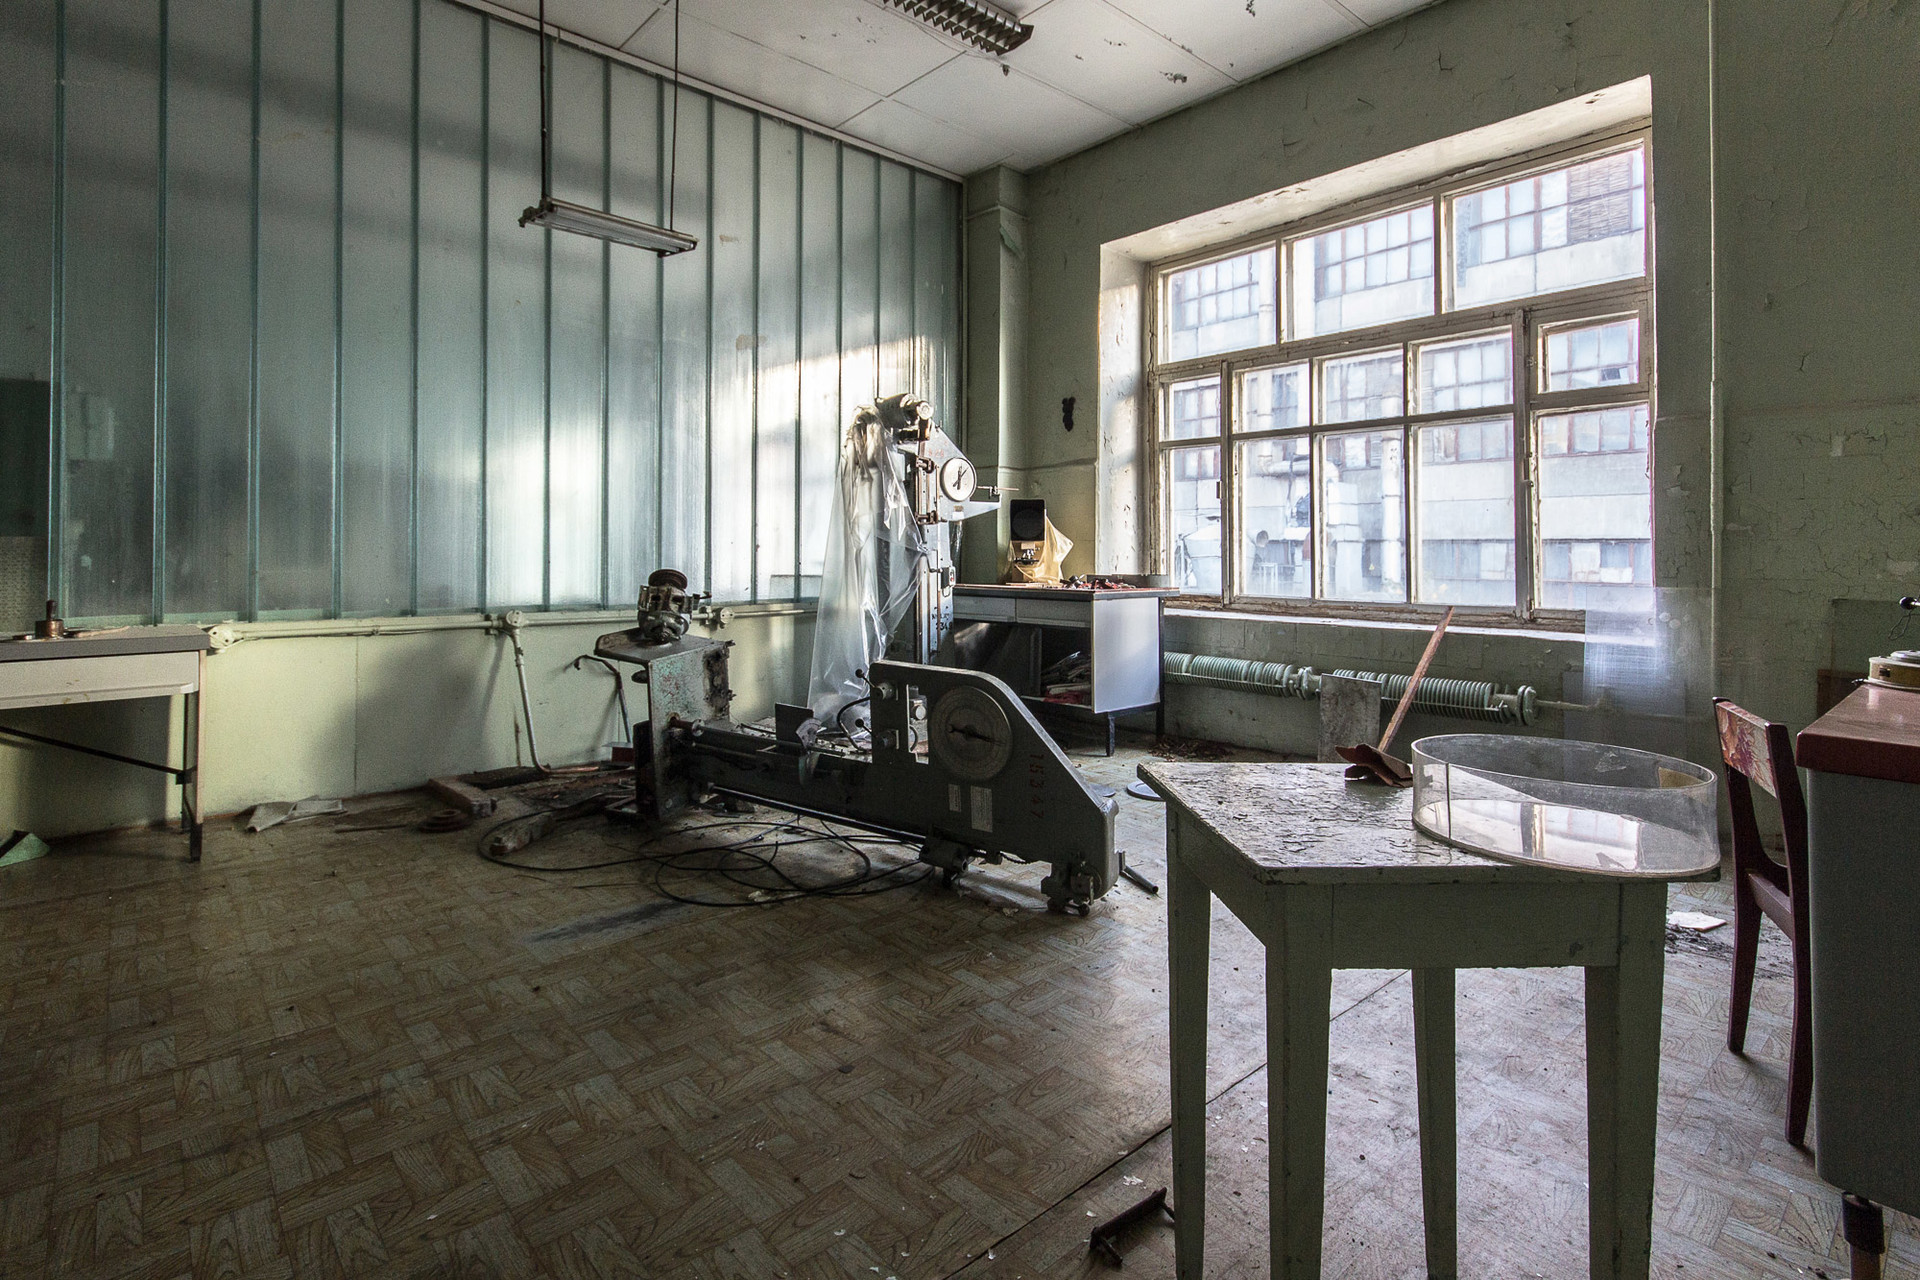 Ancien laboratoire soviétique dans une usine de caoutchouc. Bientôt des appartements seront construits ici.